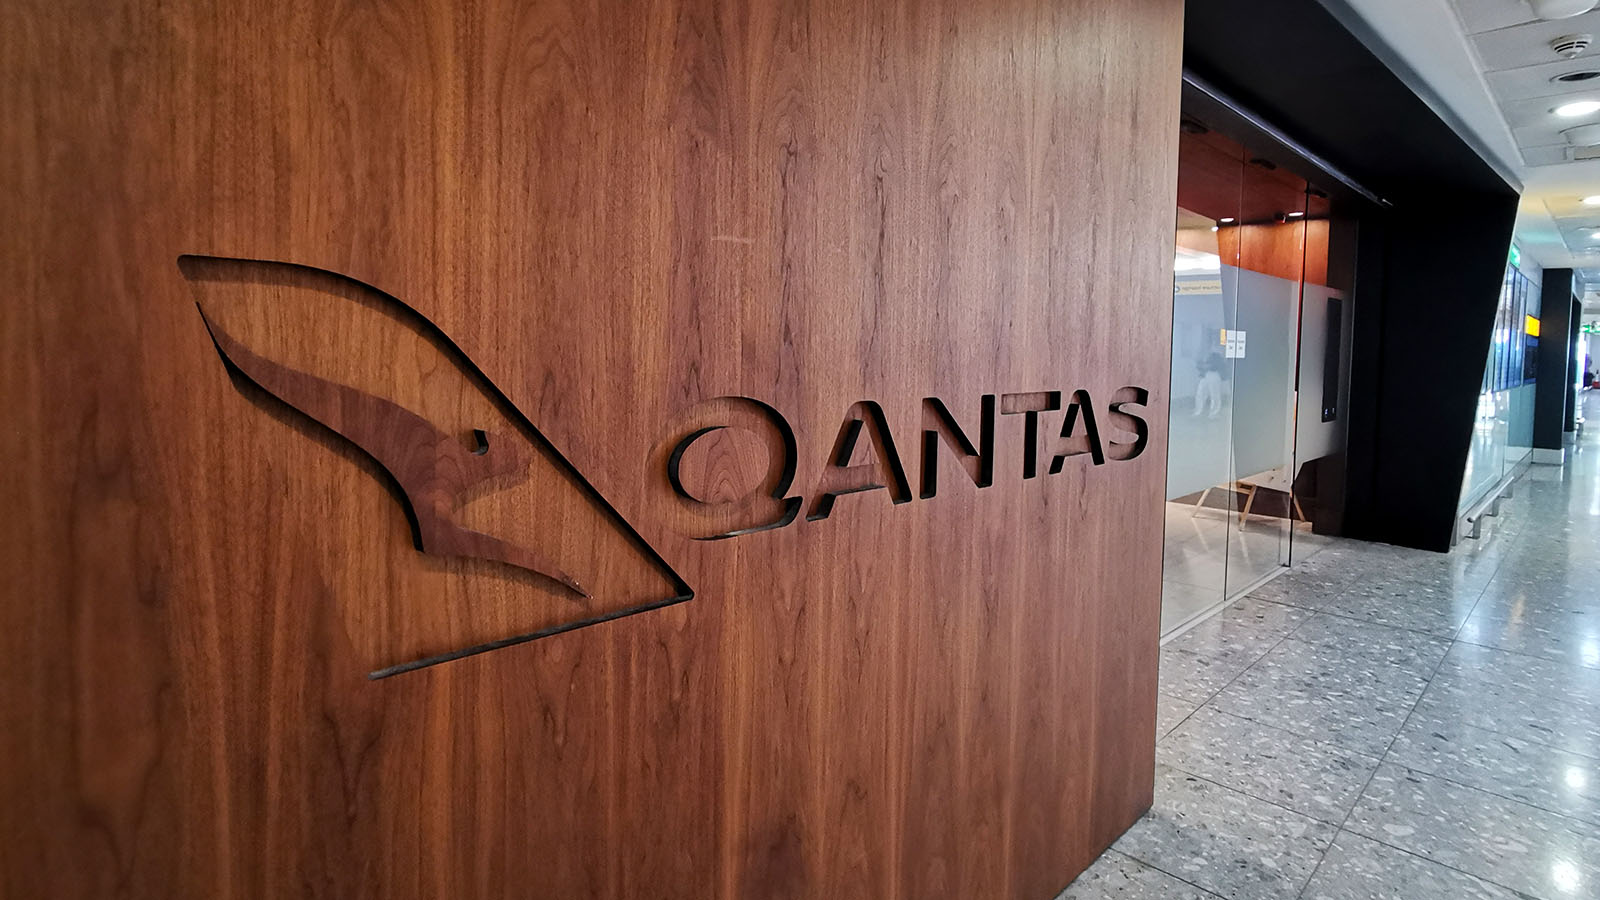 Outside The Qantas International London Lounge